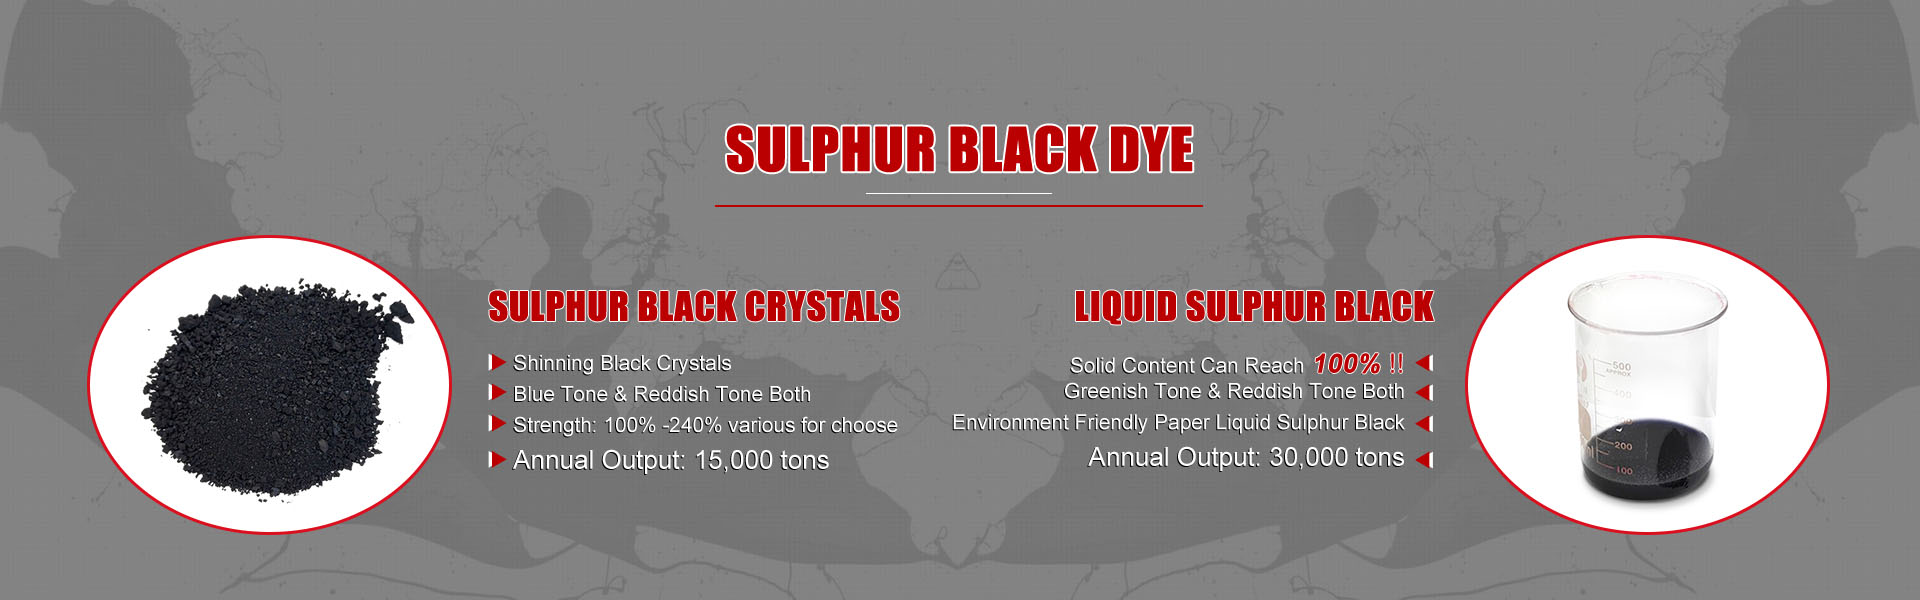 522 sulfur black br supplier